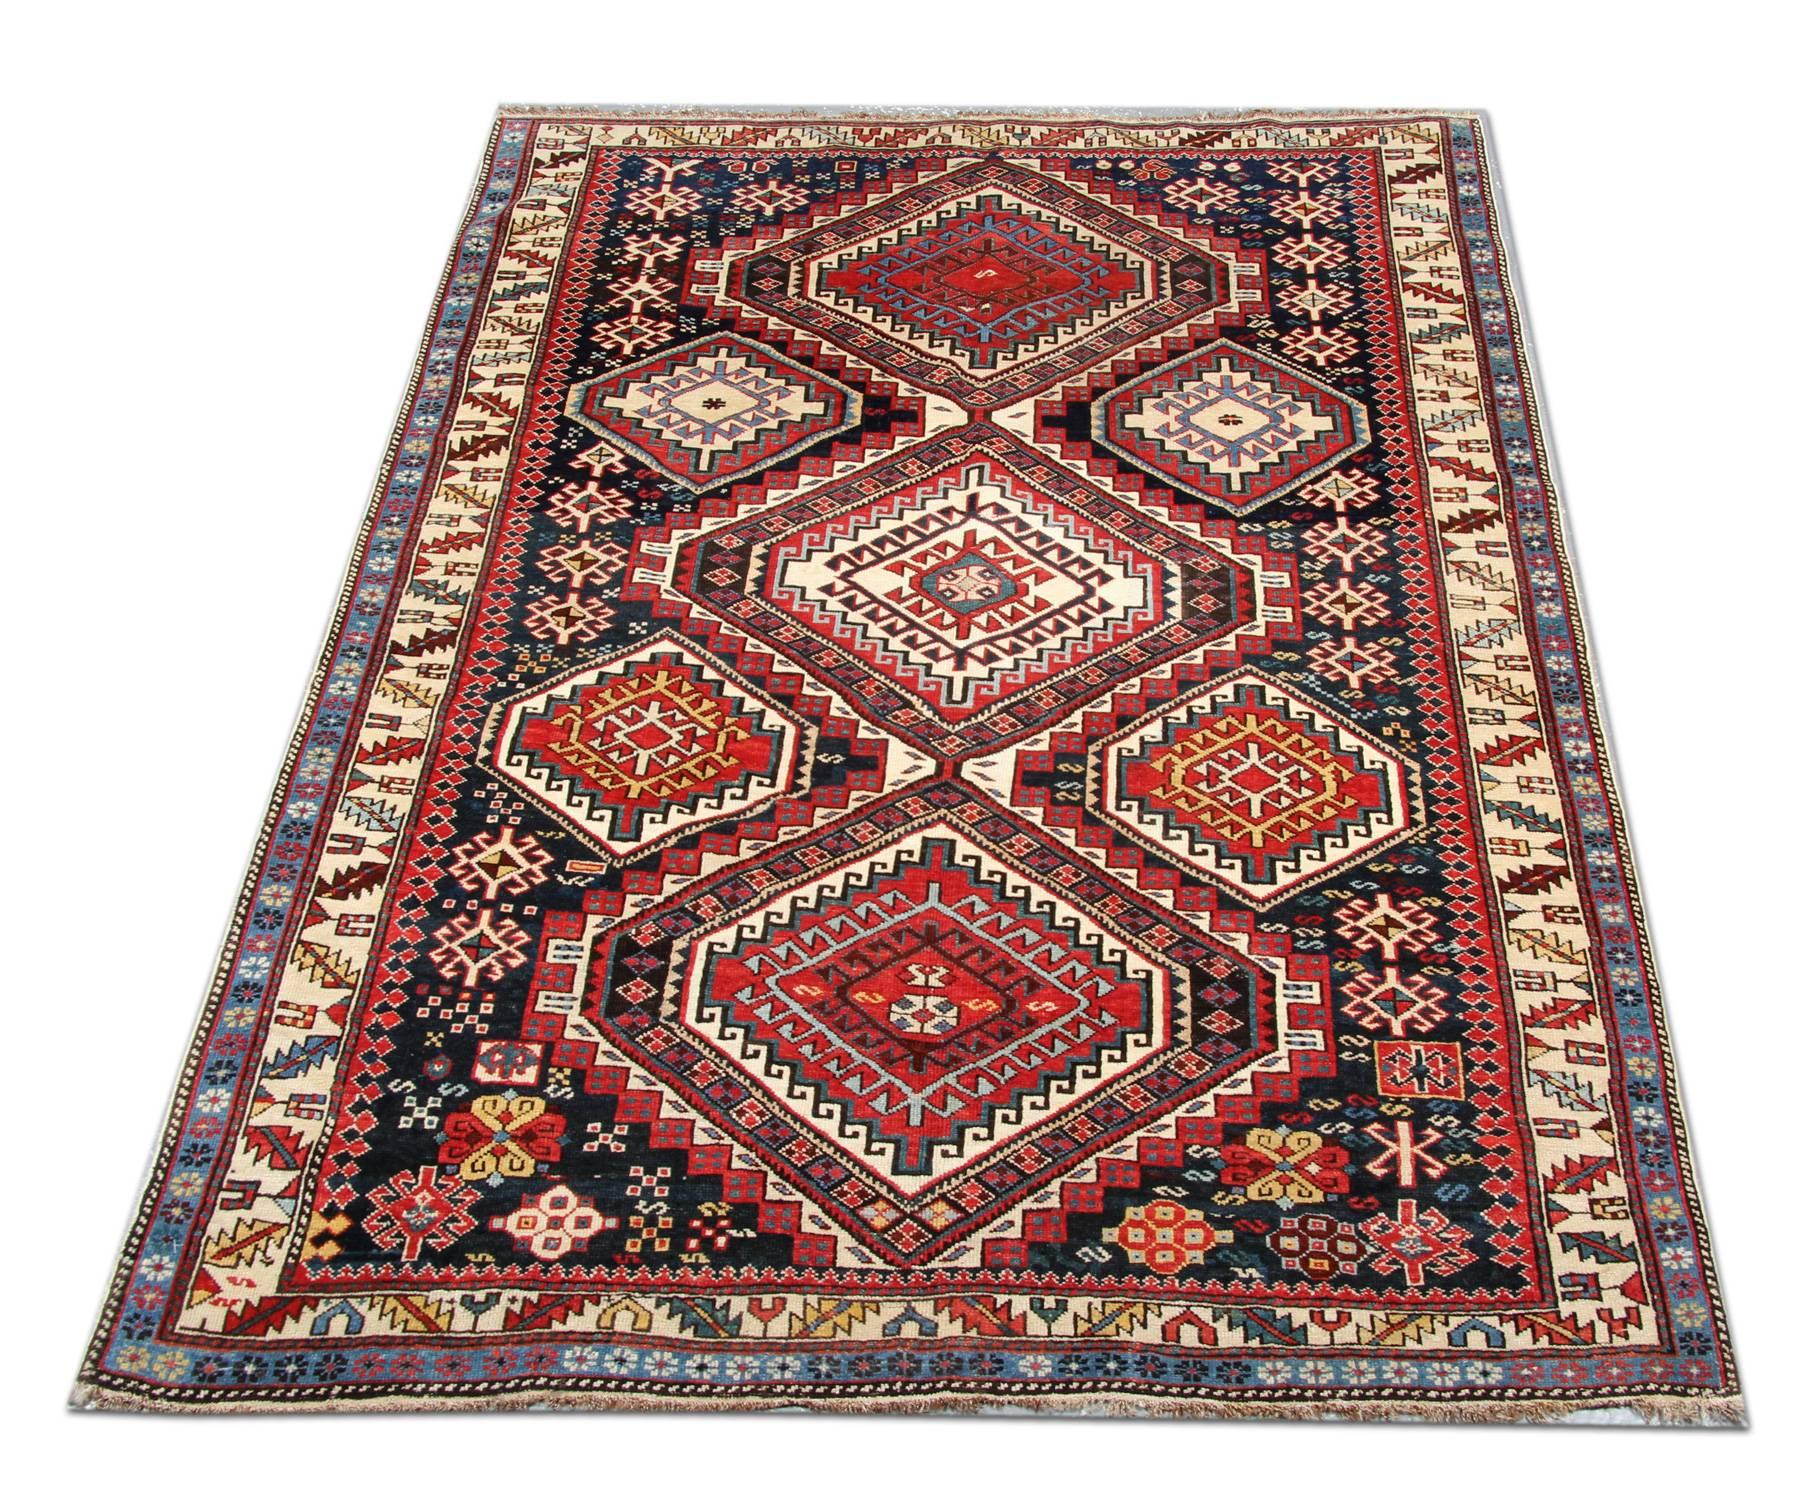 Les nomades Shirvan se trouvent dans le Caucase. Les tapis ont une couleur de fond rouge-brun typique. Le motif est noué de mémoire et consiste souvent en des médaillons, répétés sur les quatre bords. Les humains, les animaux à quatre pattes, les